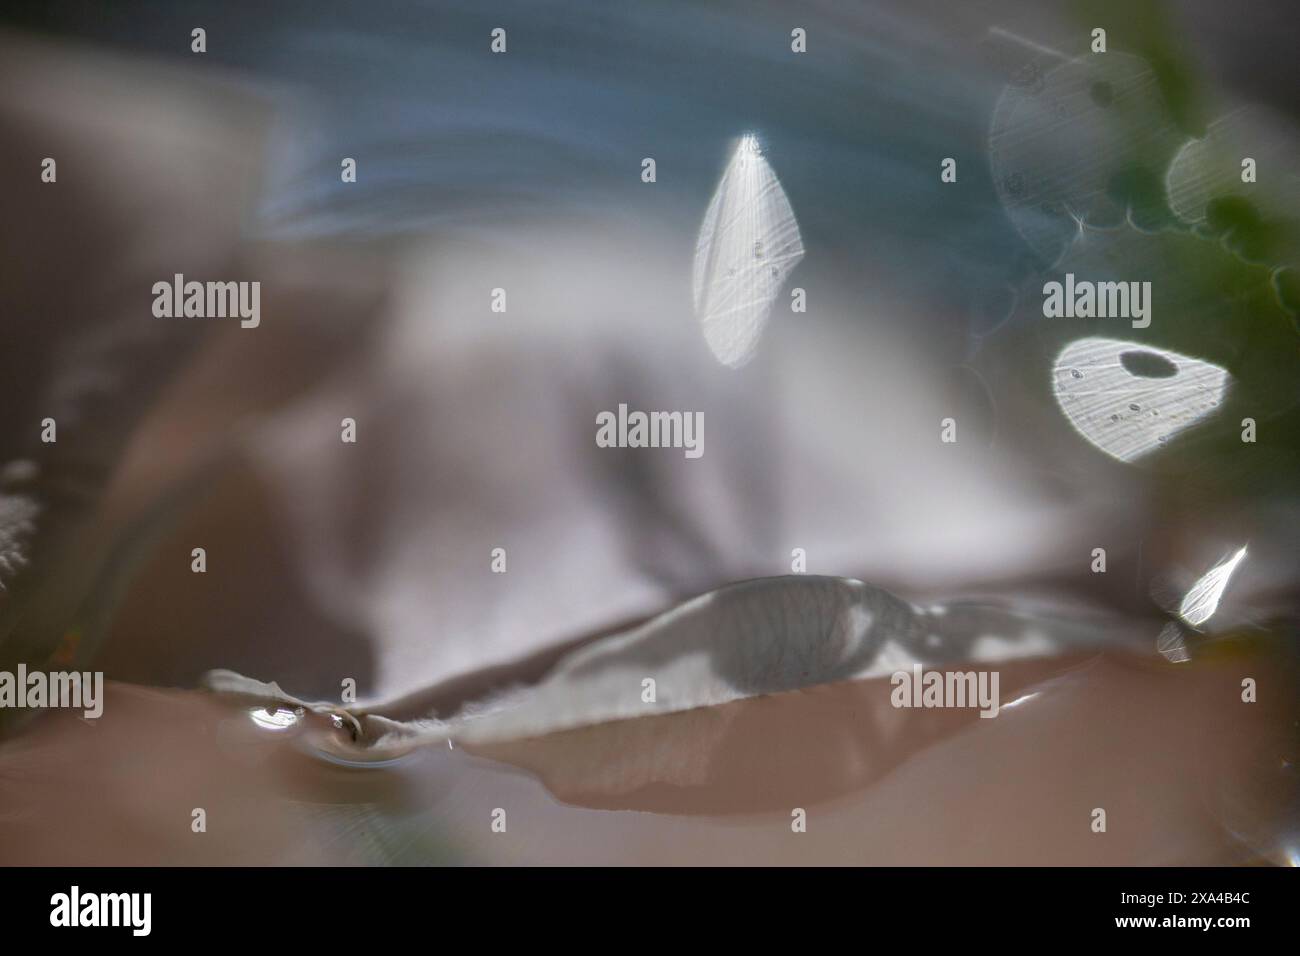 Das Bild zeigt eine sanfte Szene von Wassertropfen auf einer durchsichtigen, empfindlichen Oberfläche, mit sanfter Beleuchtung und verschwommenem Hintergrund, die die traumhafte Atmosphäre verstärken. Stockfoto